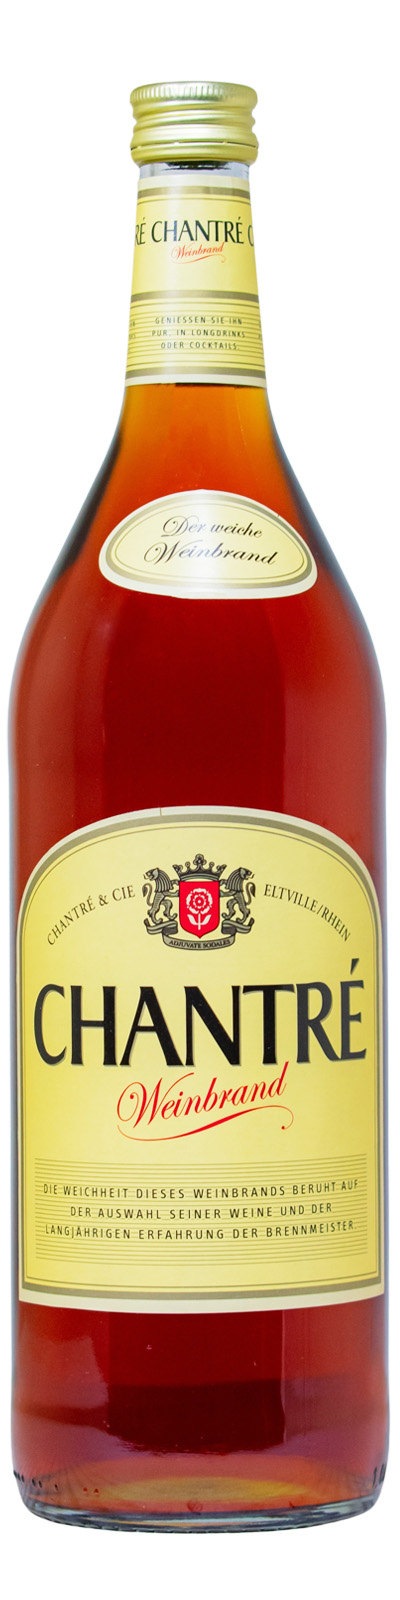 Chantre Weinbrand (1L) günstig kaufen